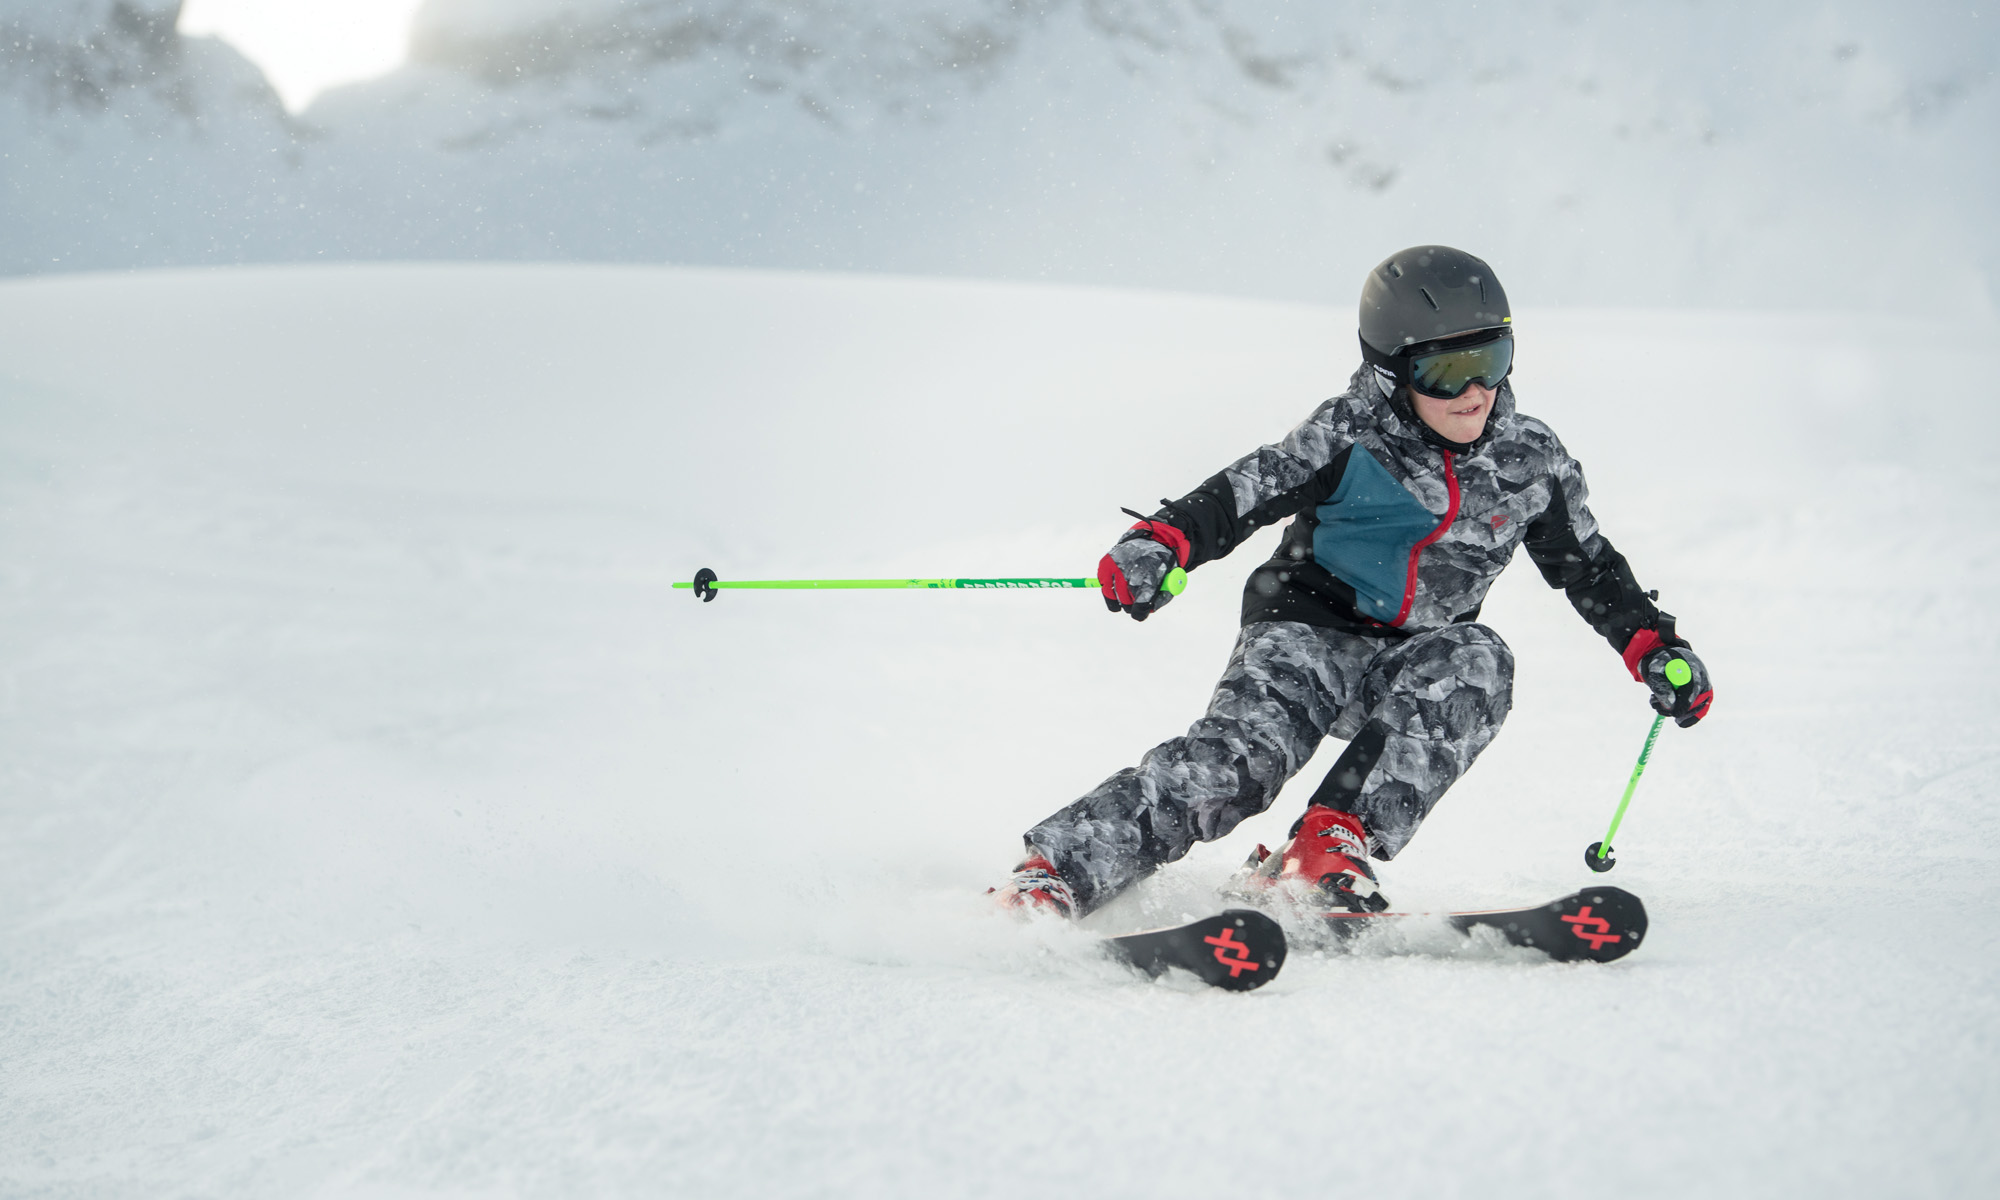 Een jongen in een camouflage outfit skiet van de piste.